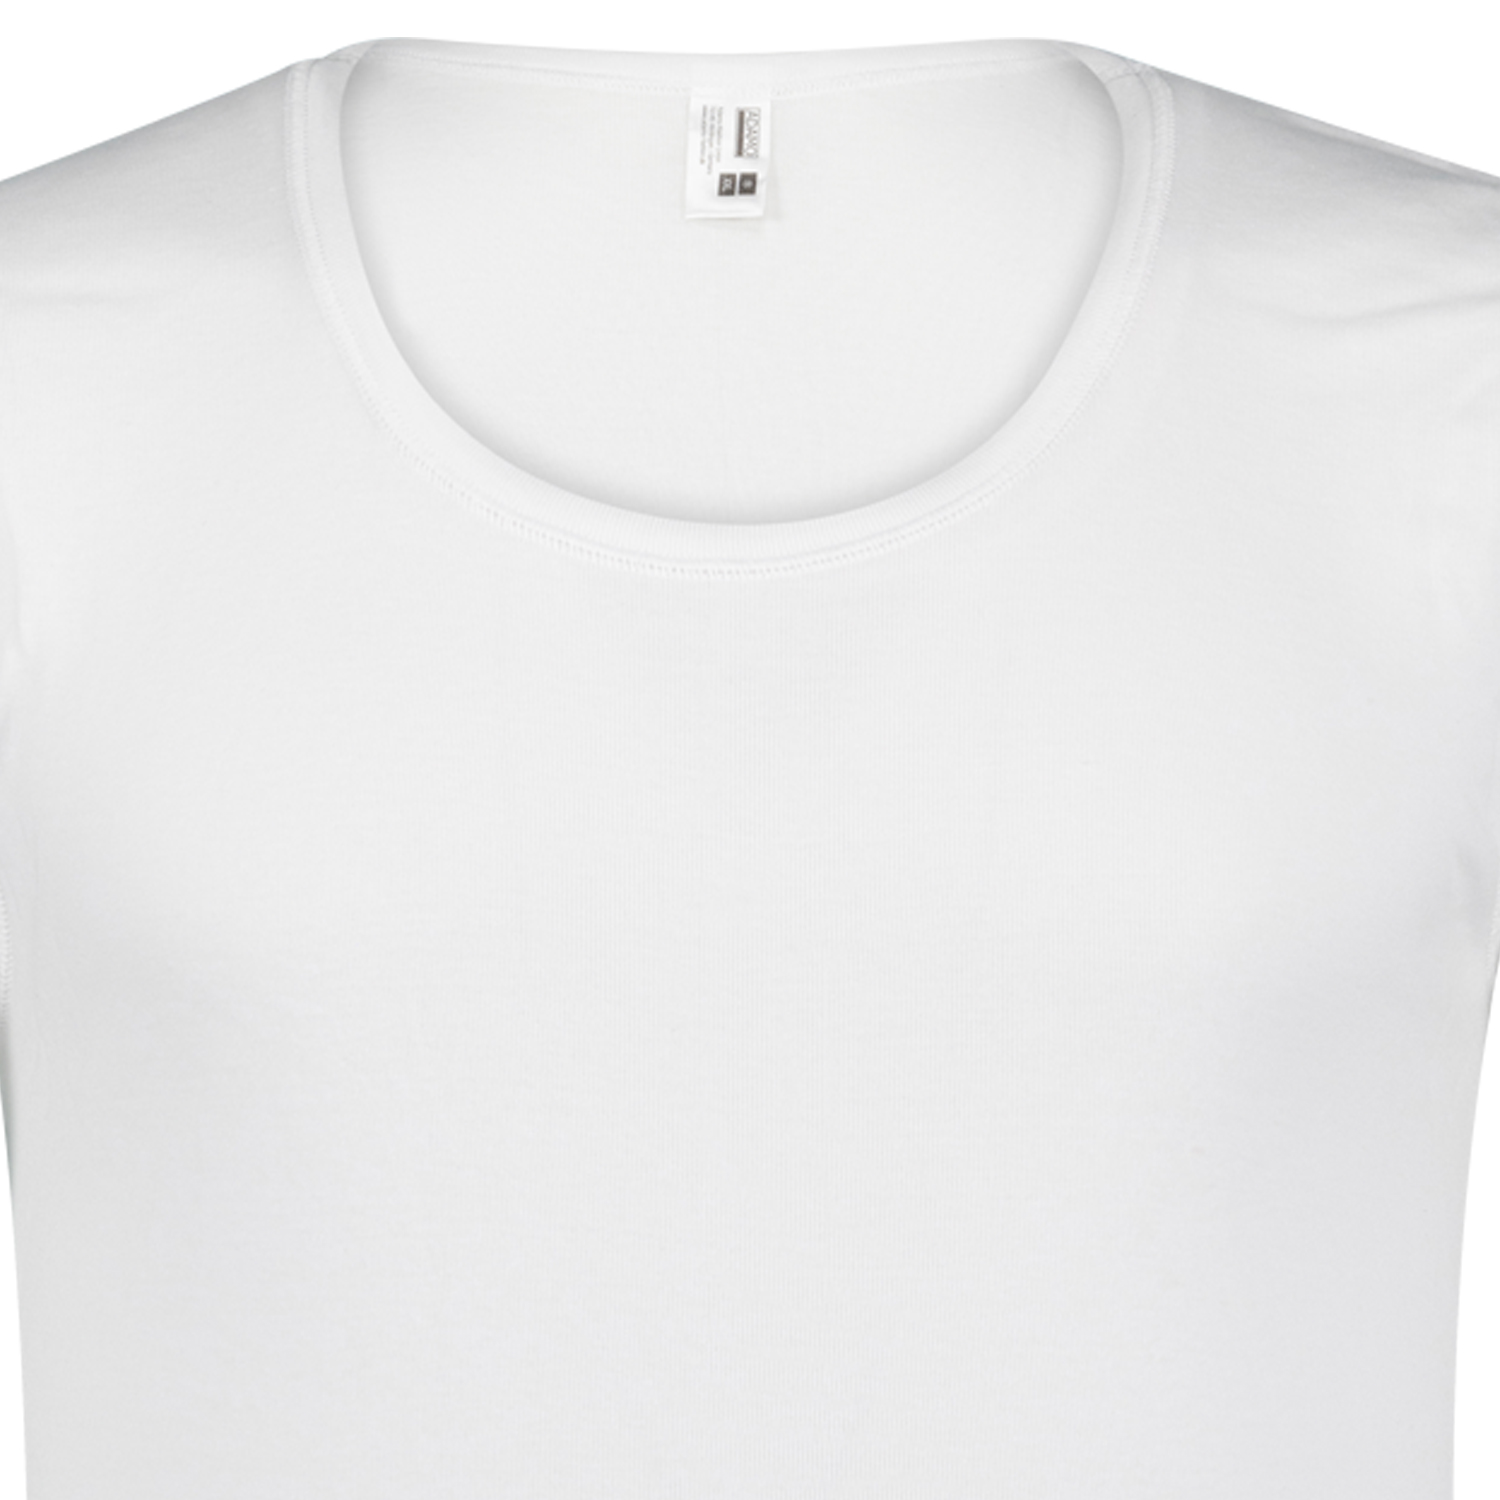 Weißes Cityshirt ohne Arm von ADAMO in großen Größen bis 20